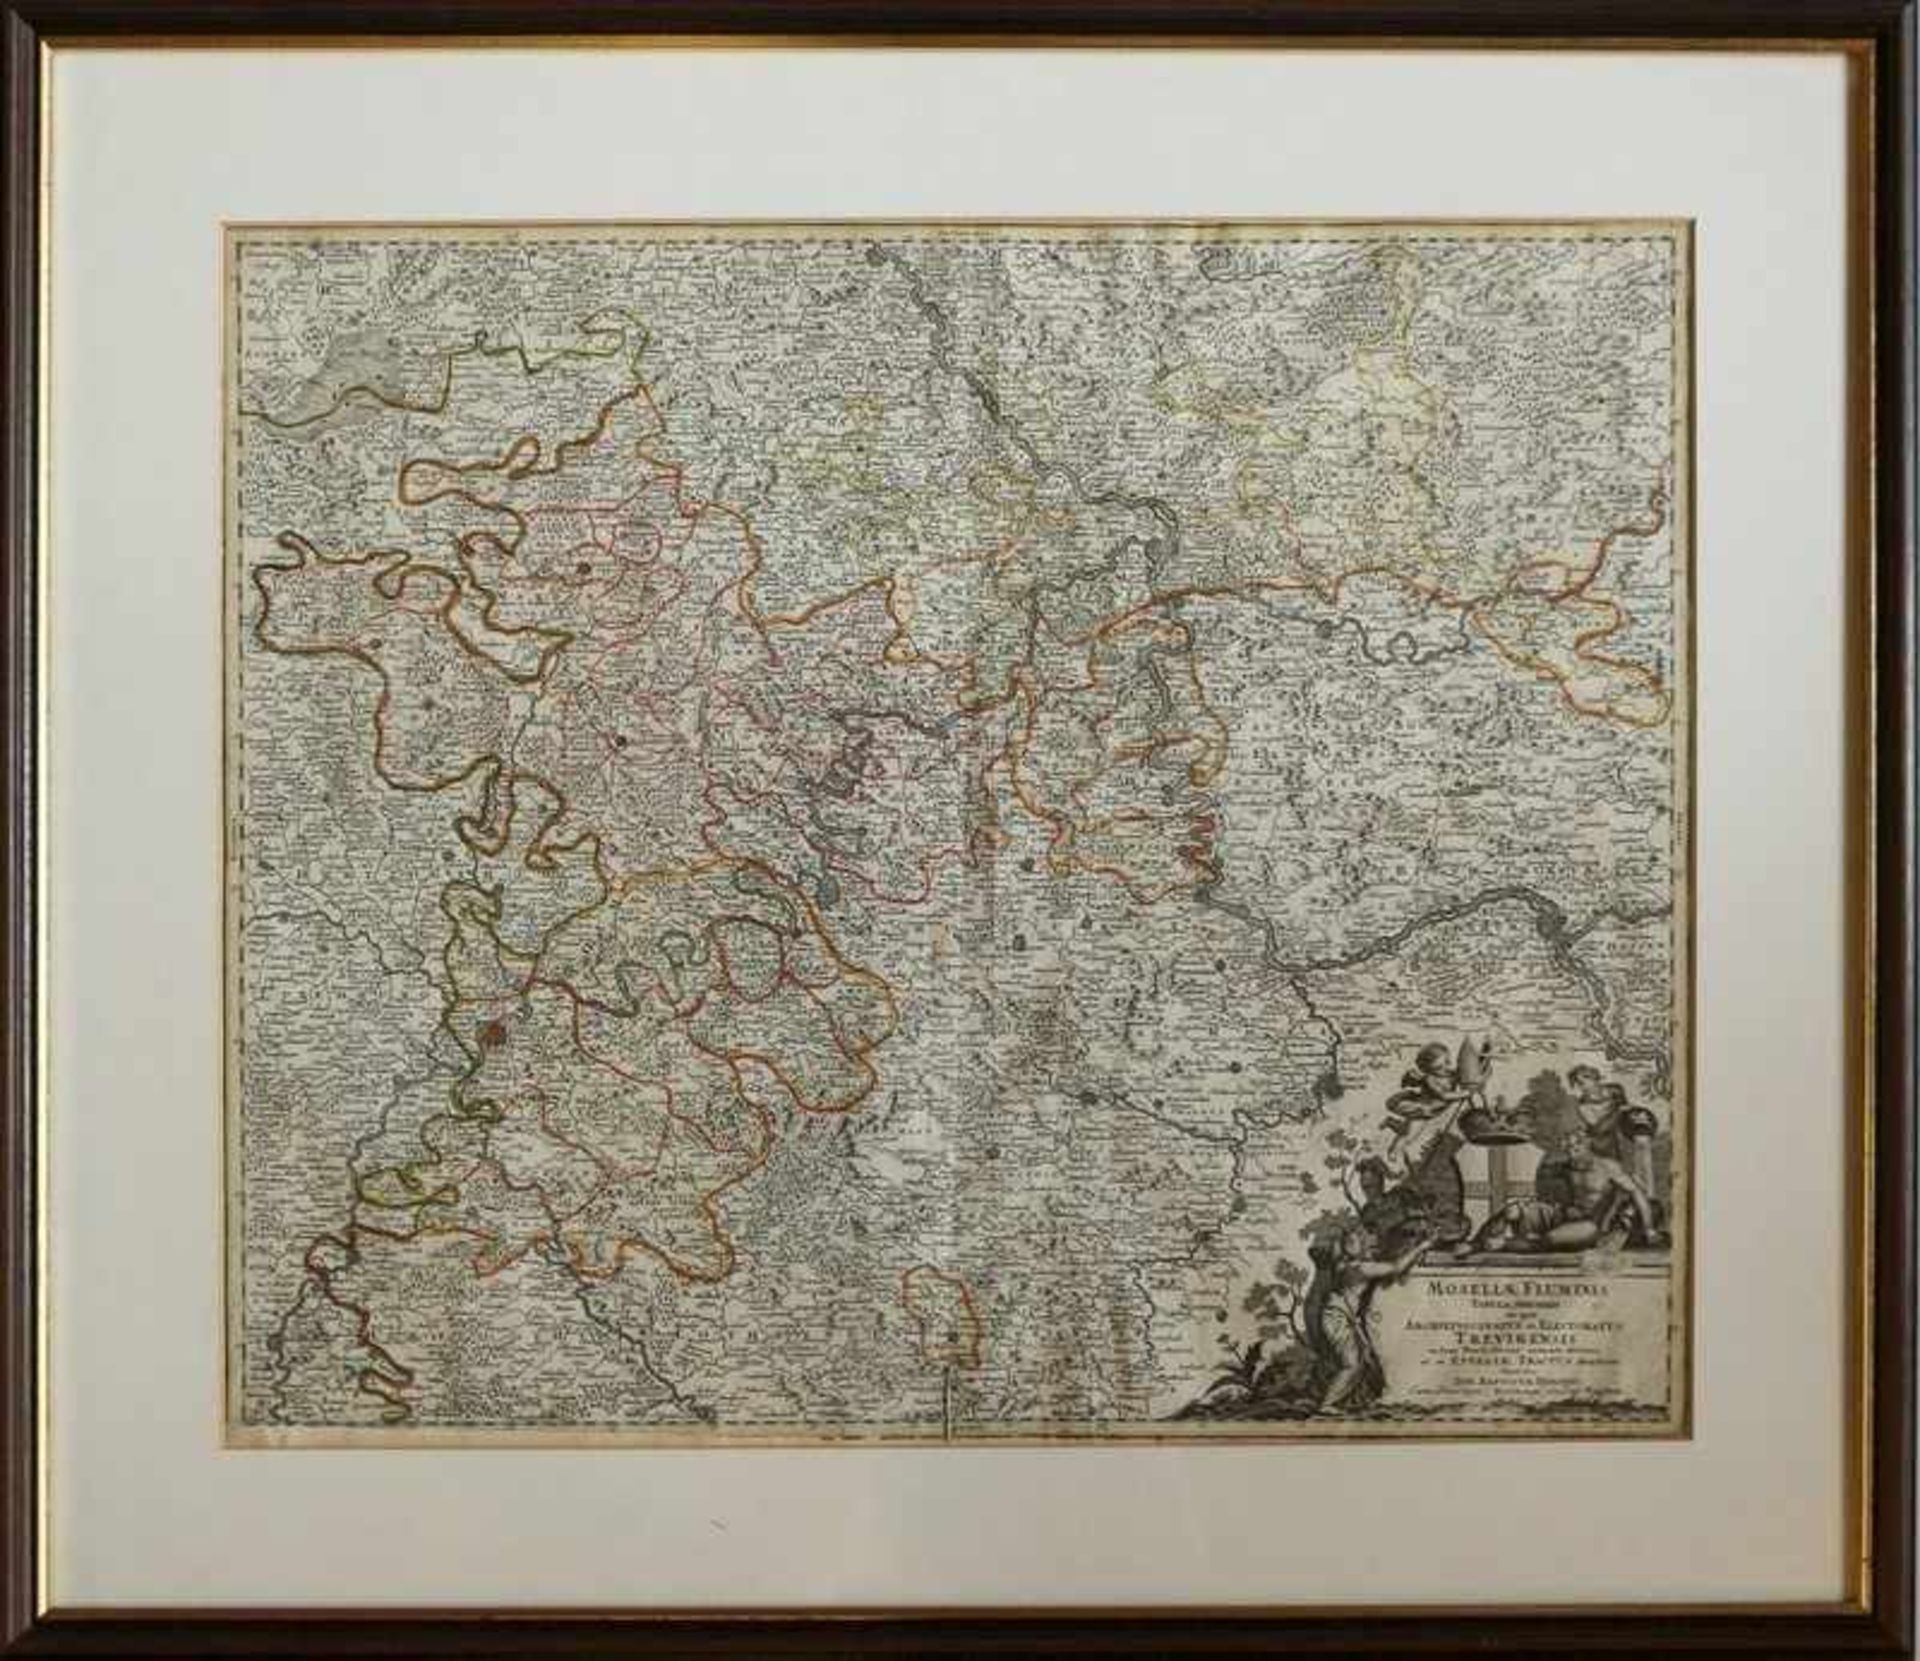 Karte - Homann, Johann Baptist 1664 Oberkammlach-1724 Nürnberg, dtsch. Kartograph, Kupferstecher